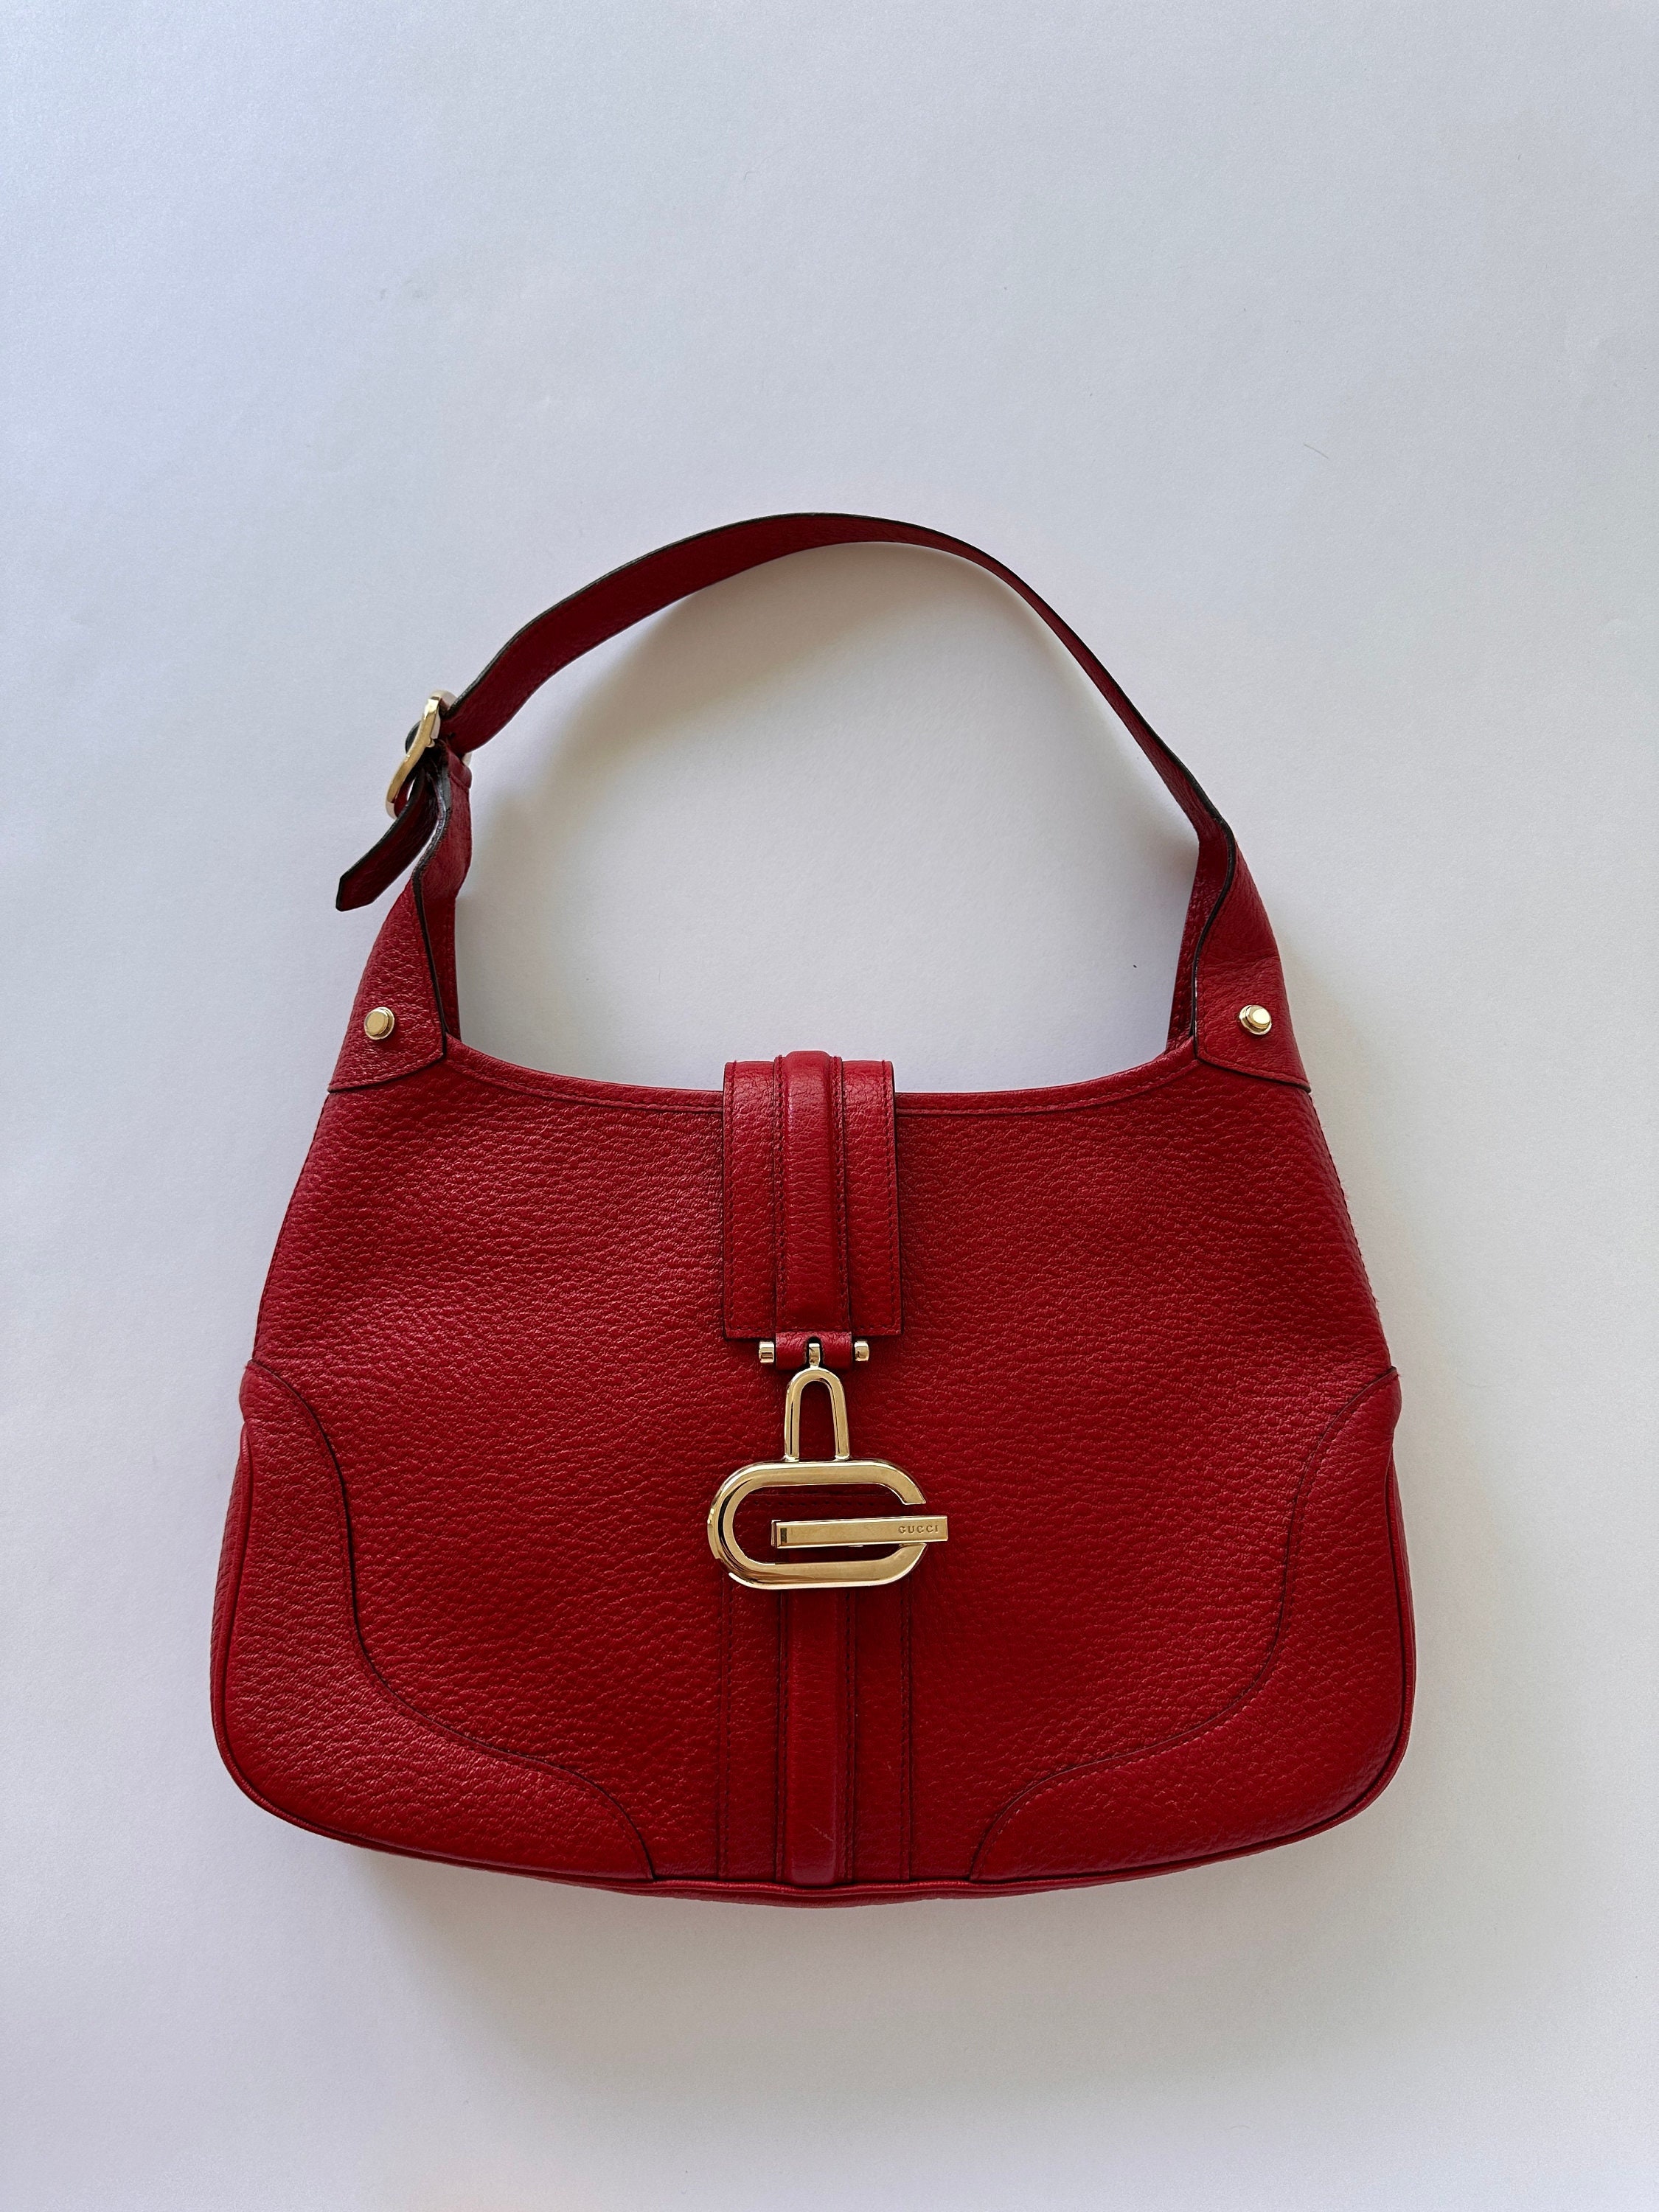 Vintage 80s Gucci Shoulder Crescent Hobo Leather Bag